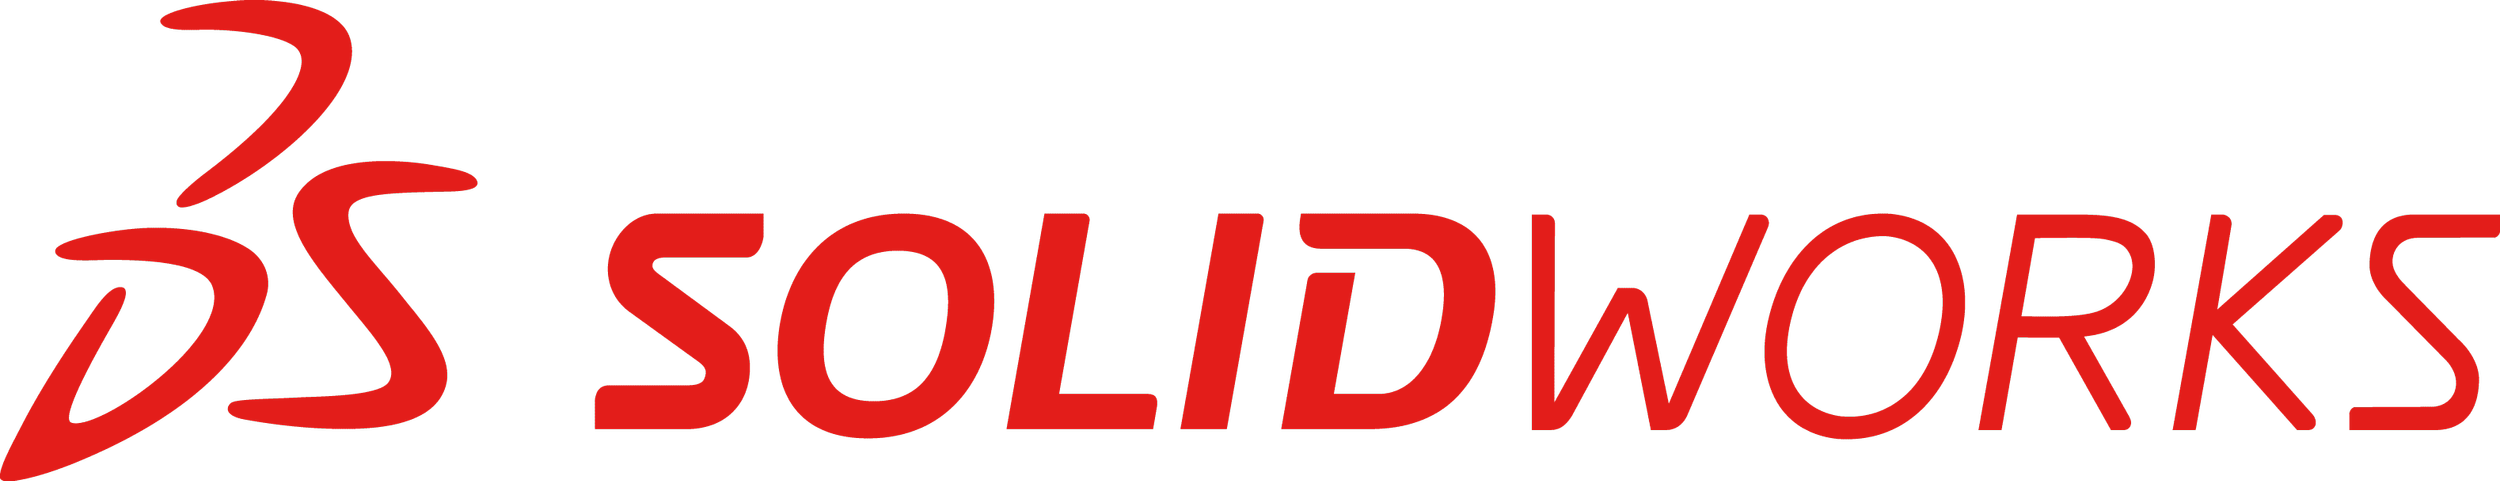 SolidWorks-logo-904273937(1).png